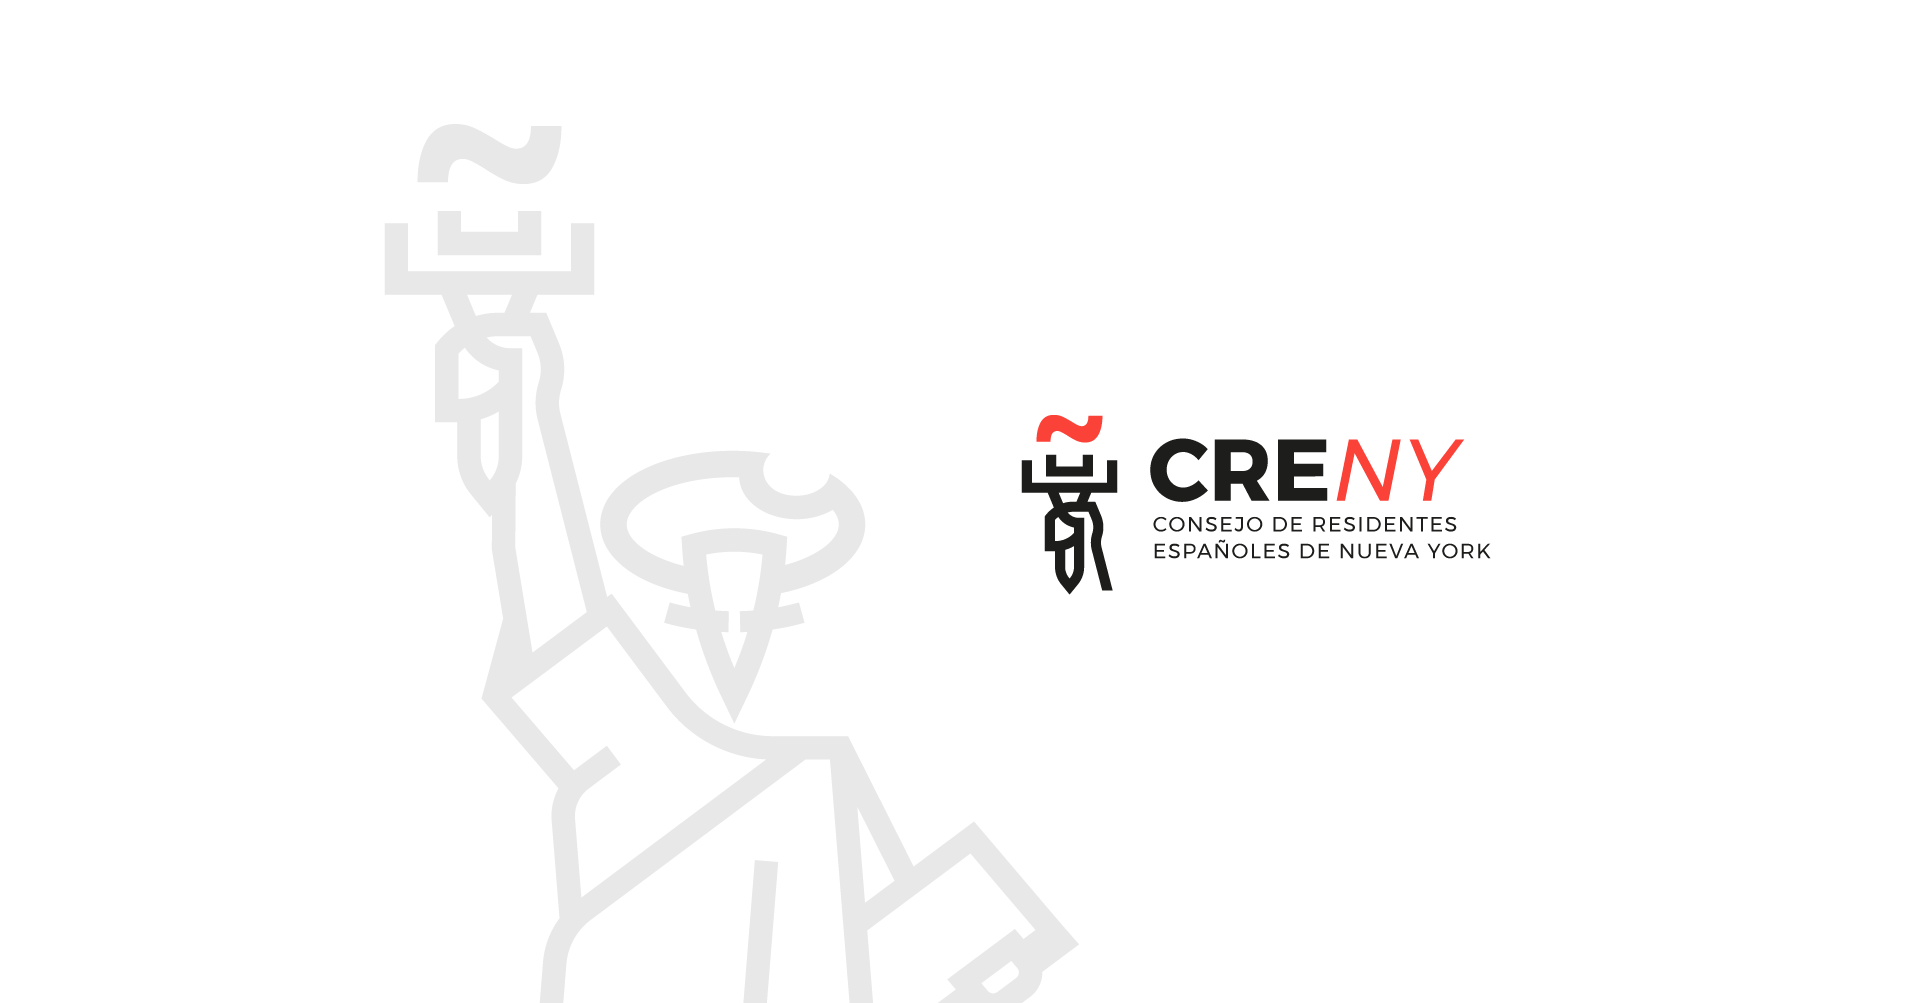 6-creny-logo-mascota